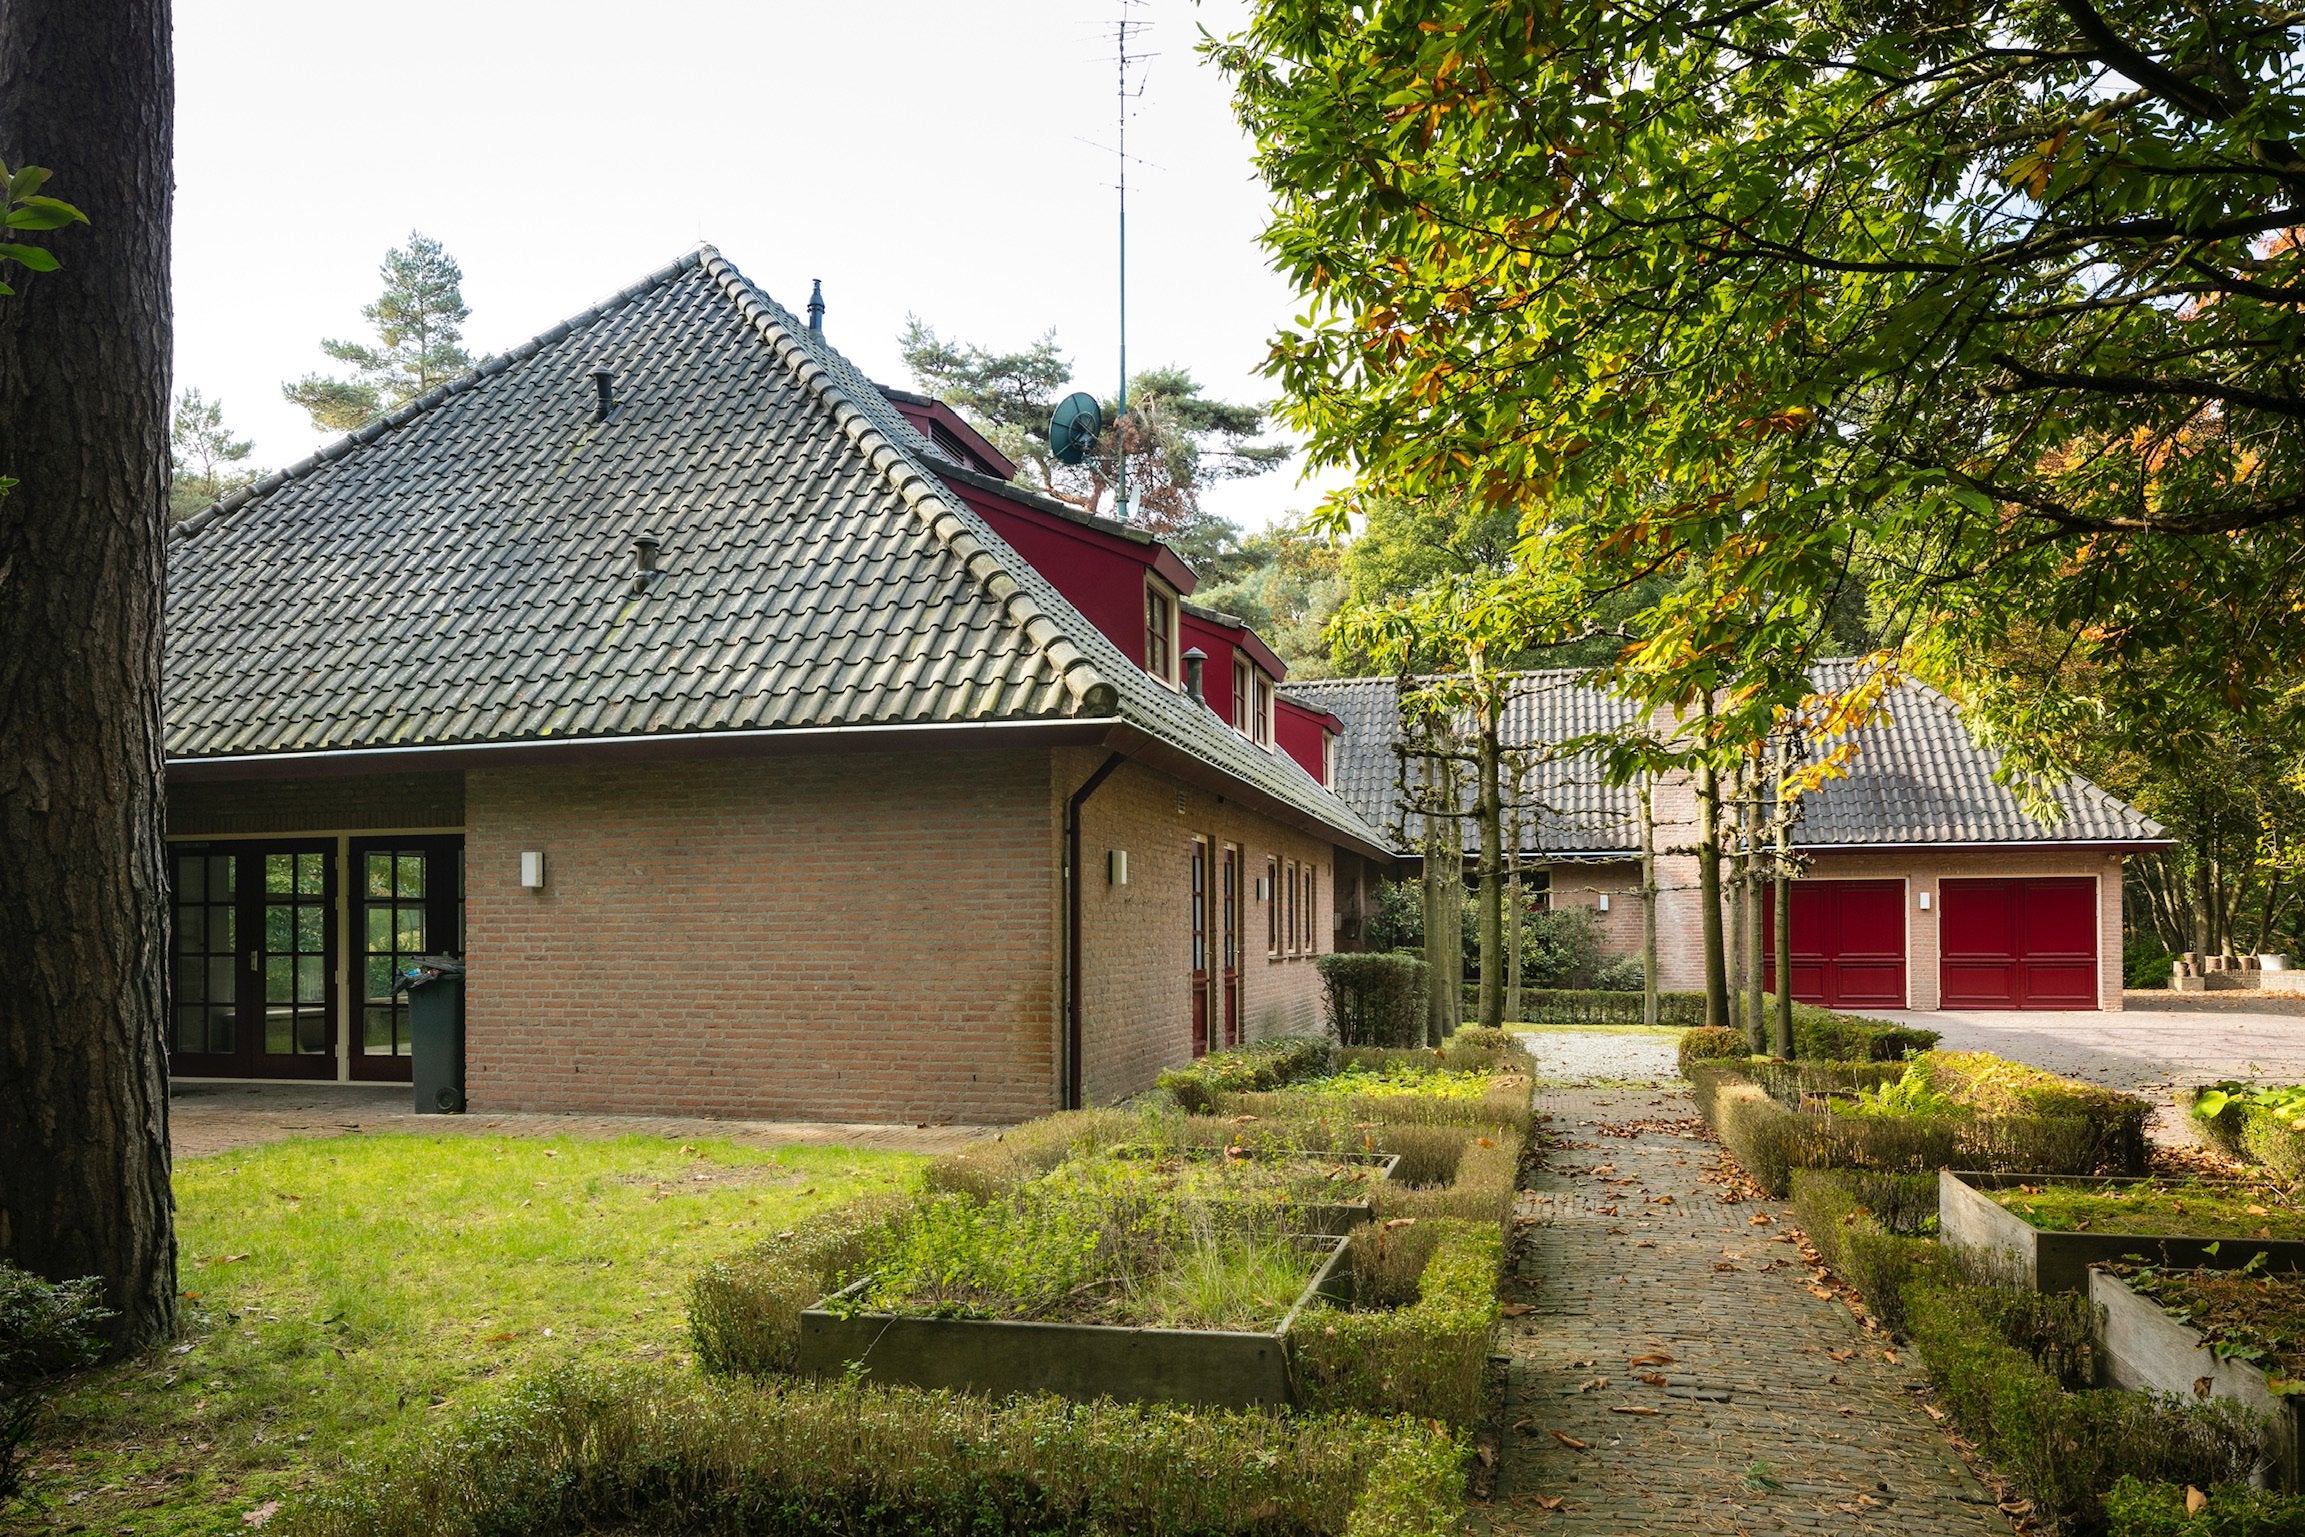 Bekijk foto 1/44 van house in Lieshout